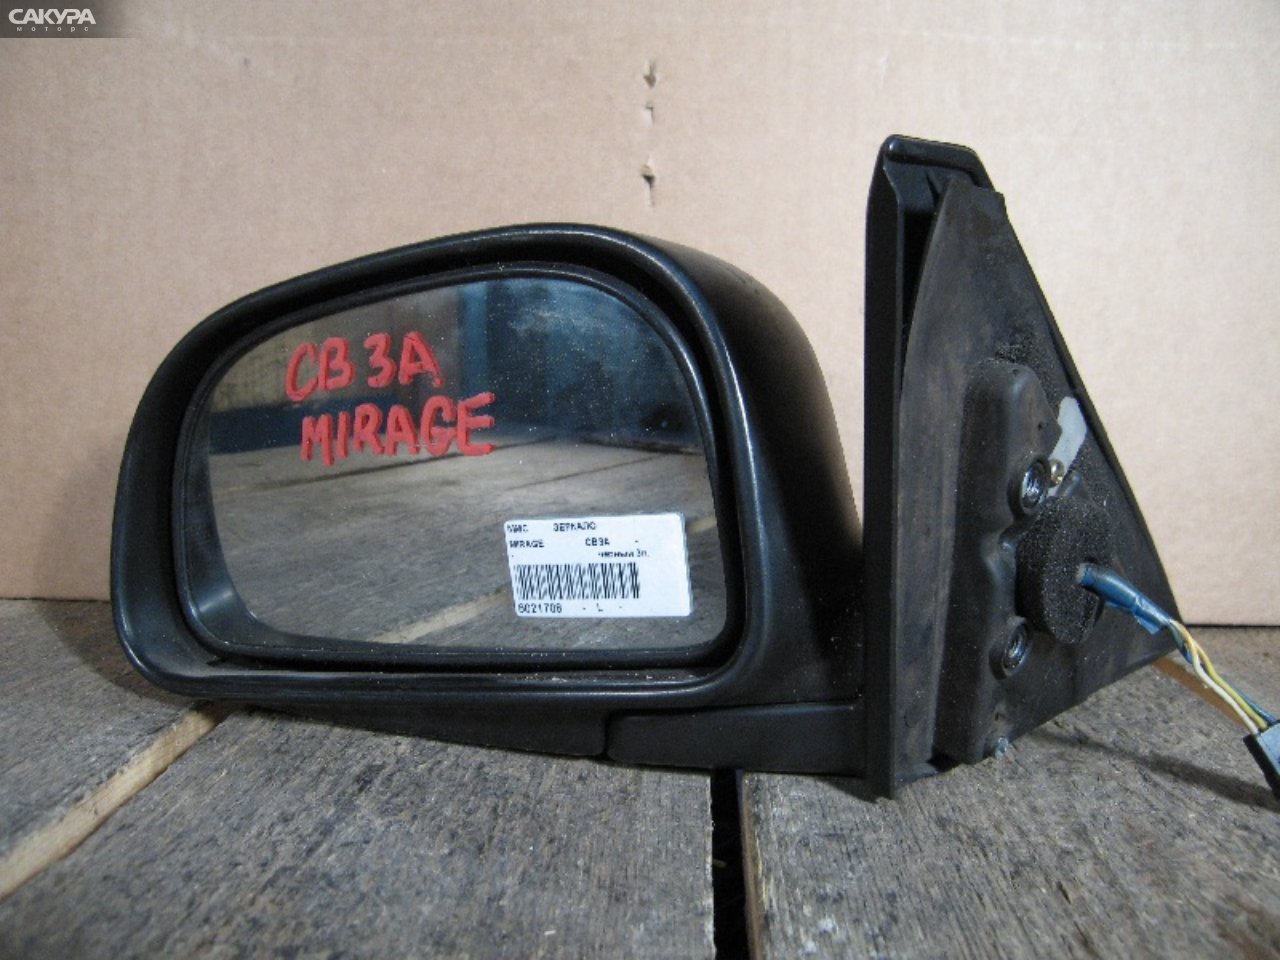 Зеркало боковое левое Mitsubishi Mirage CB3A: купить в Сакура Абакан.